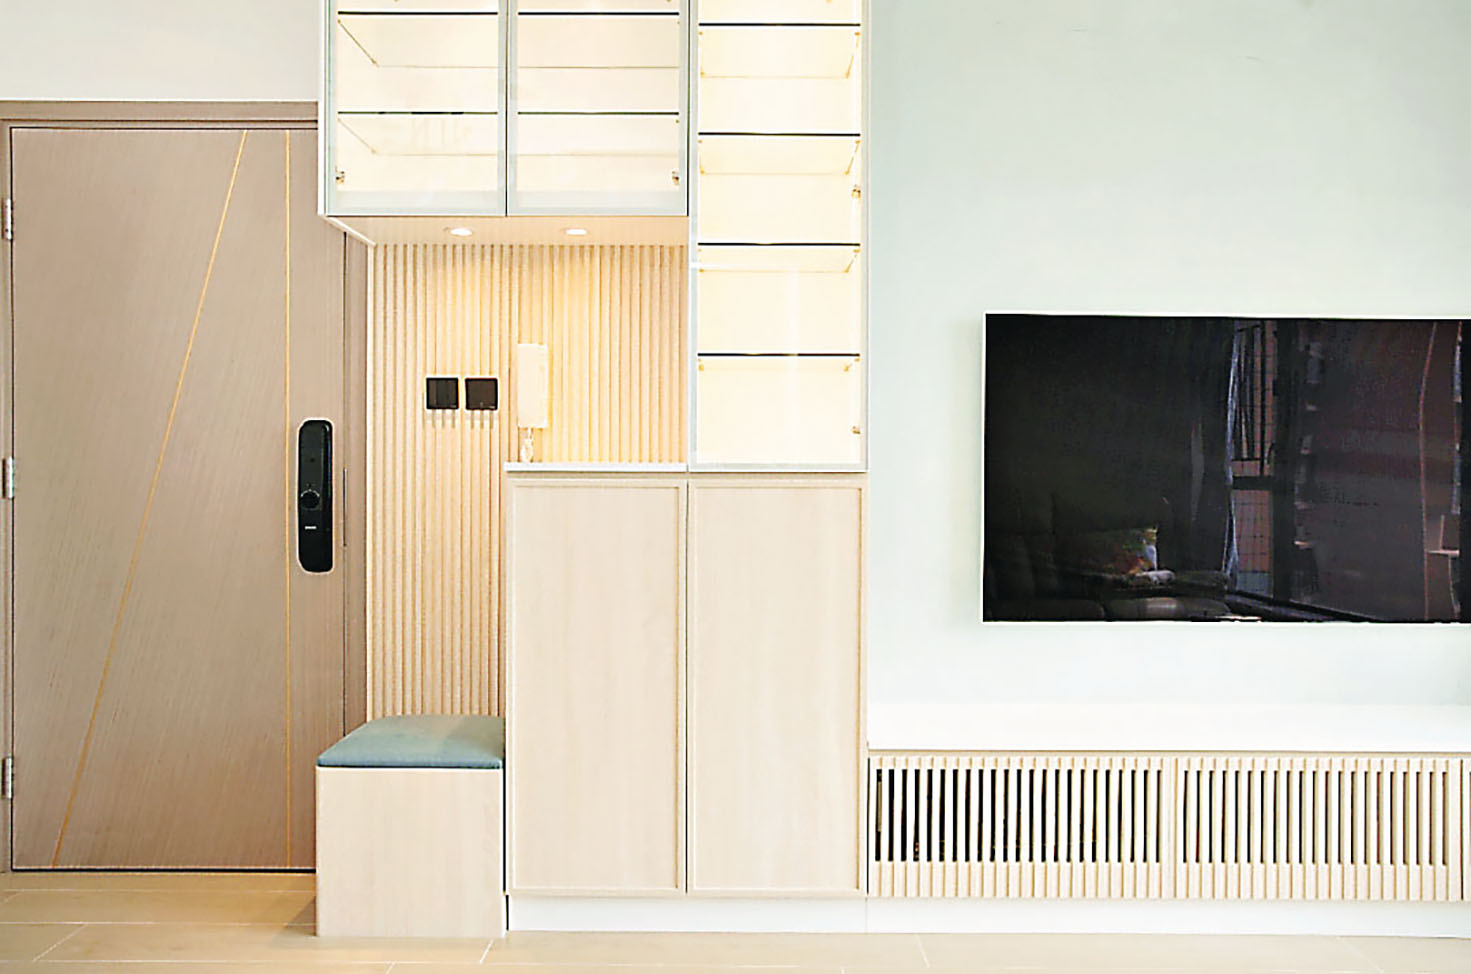 ■客廳的電視組合櫃無論色調、燈光與條紋裝飾都配搭得舒適自然。